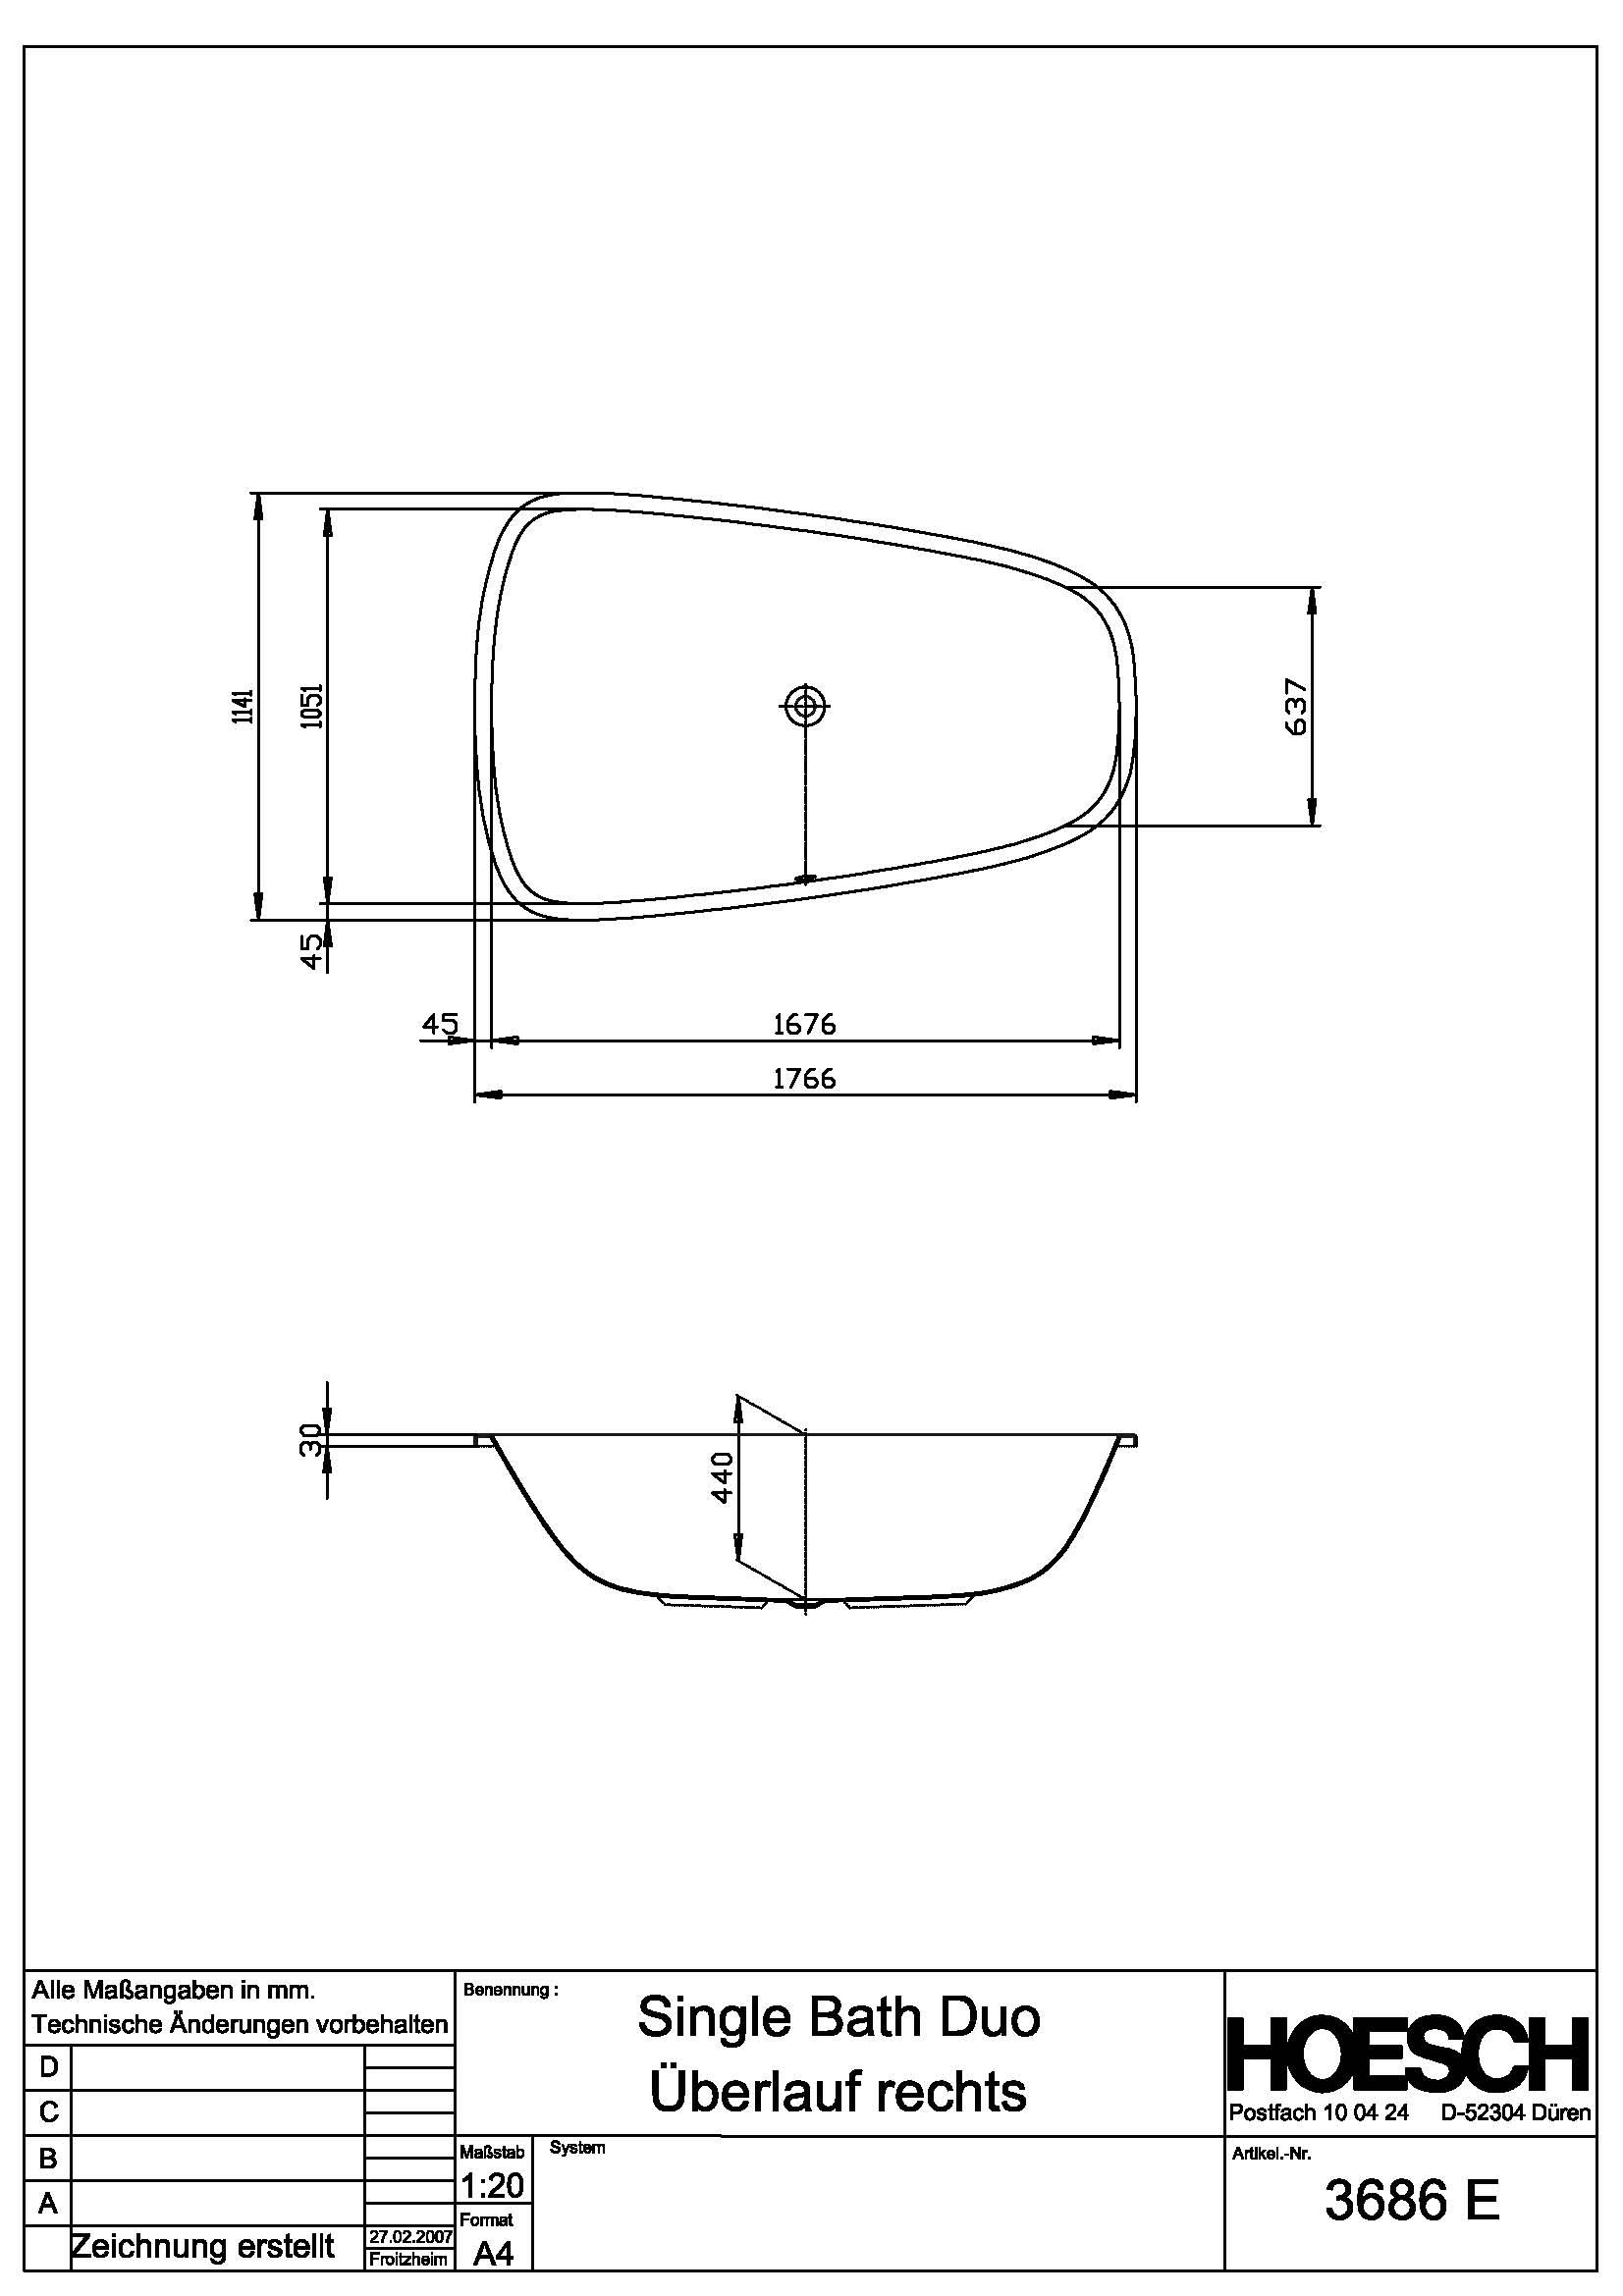 Hoesch Badewanne „Singlebath“ Duo trapez 176,6 × 114,1 cm, rechts in 